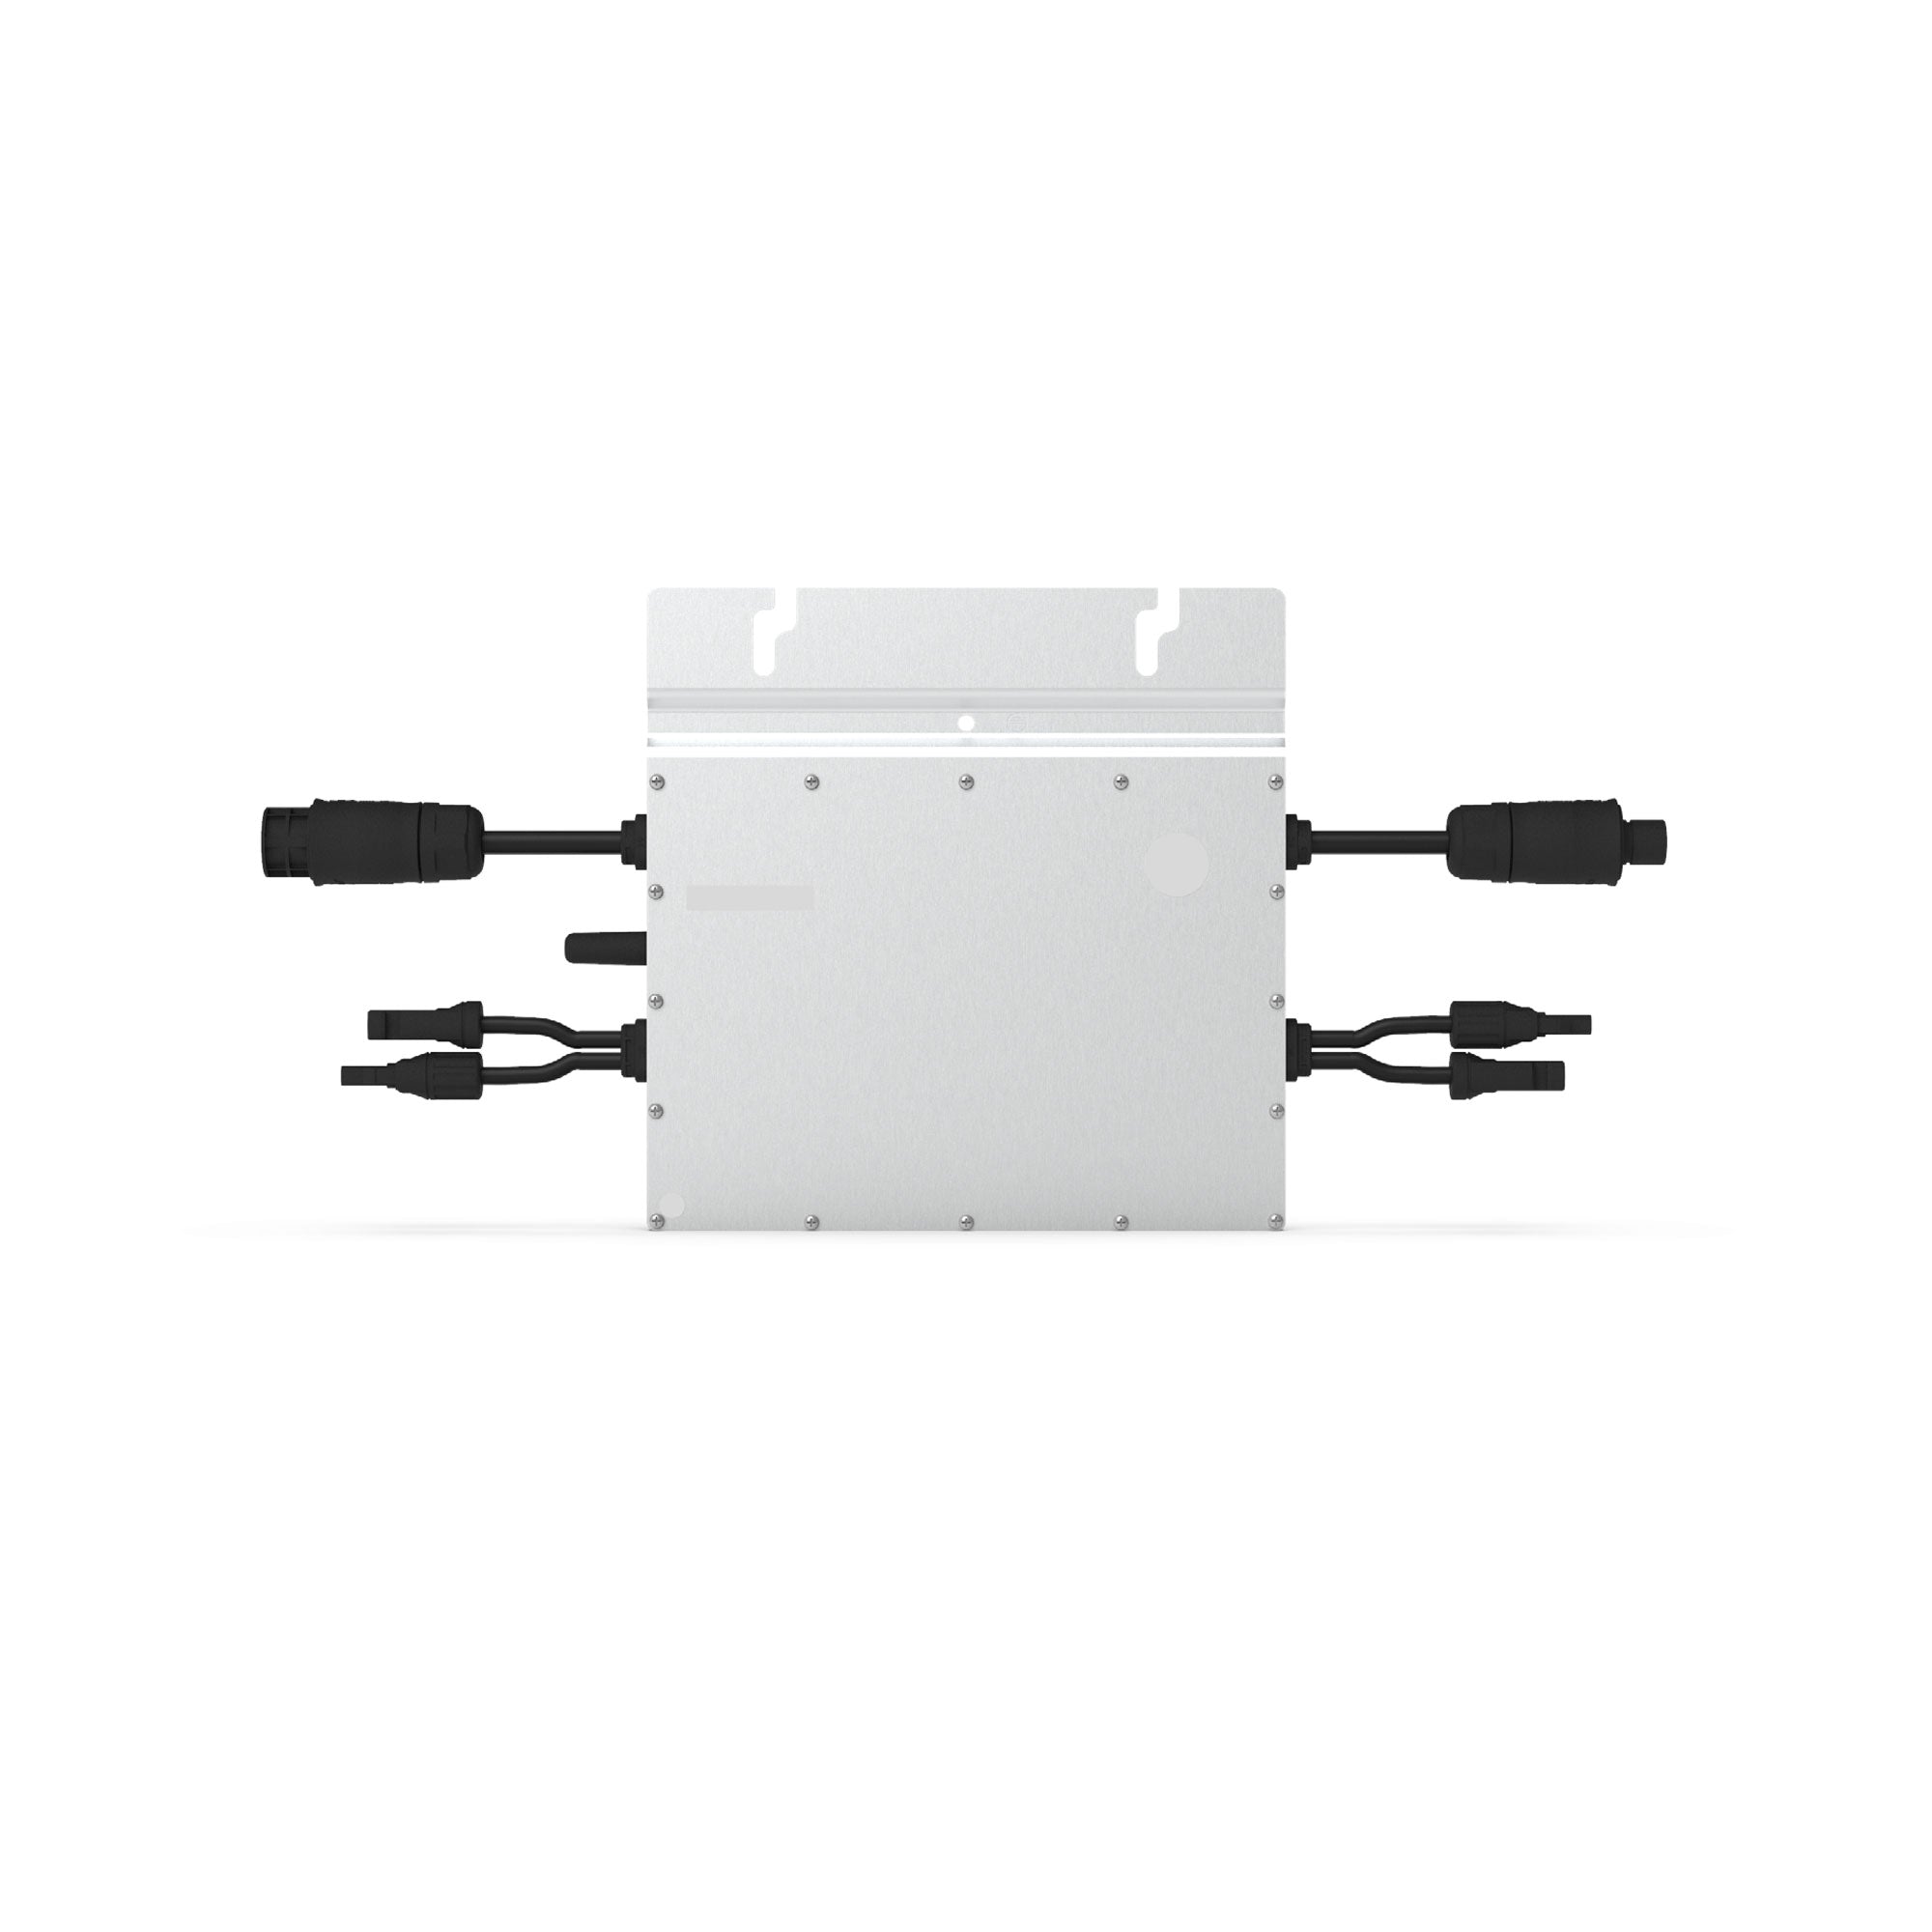 ALLDREI Wechselrichter Hoymiles 800W HM-800, 600W/800W einstellbar, inkl. DTU-Wlite, Mikro Wechselrichter mit WLAN für Balkonkraftwerk